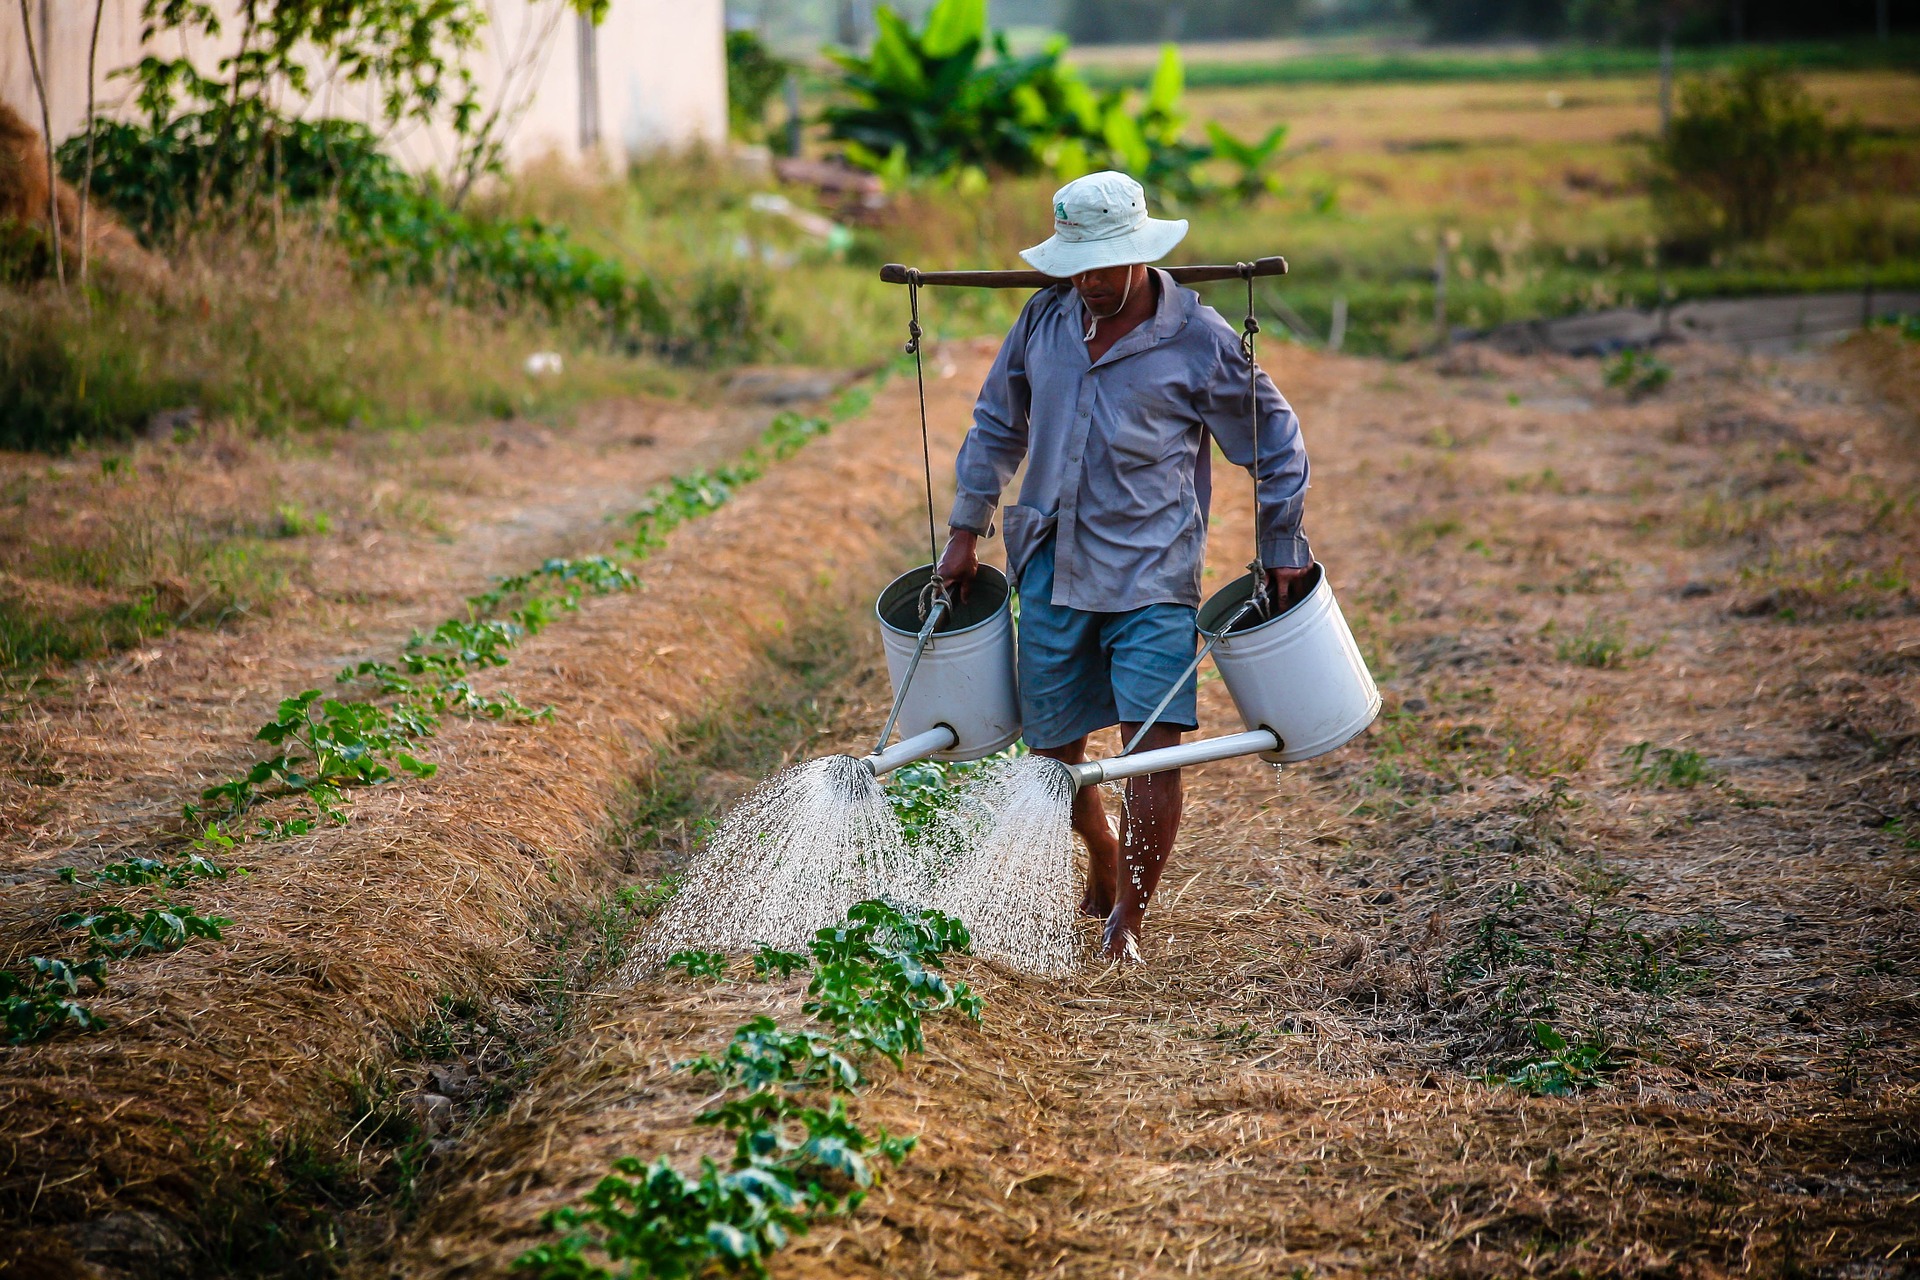 “พาณิชย์” ชี้ช่องโอกาสสินค้าเกษตรไทยในตลาดจีน-อินเดีย – เศรษฐกิจ